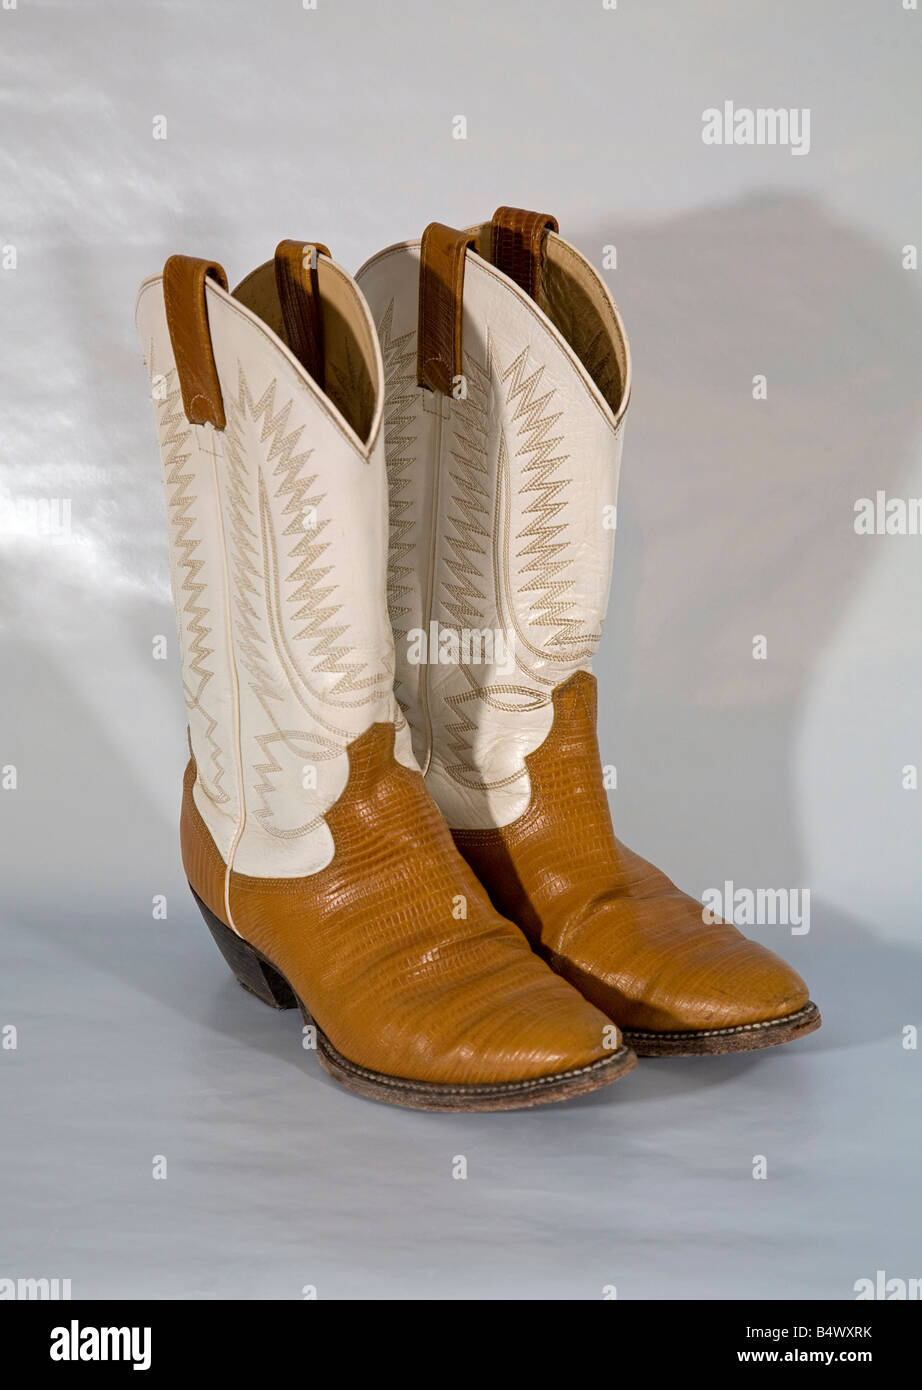 Ein paar bestickte High heels hoch gekrönt western Cowboy-Stiefel made in  Mexiko Stockfotografie - Alamy